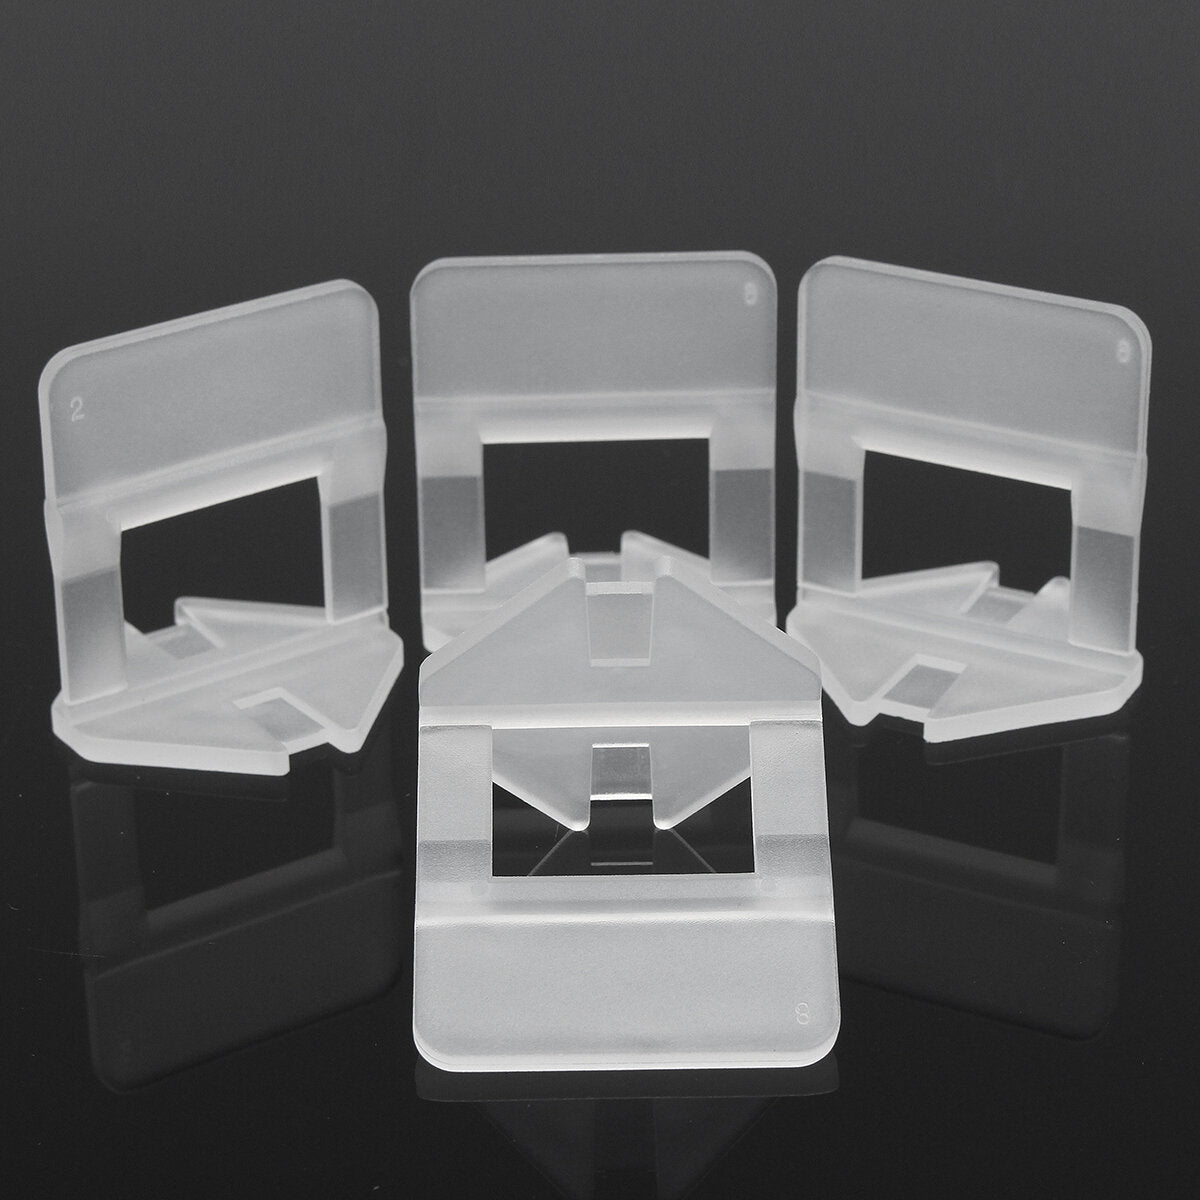 100/200 stuks 1.0 mm 1.5 mm witte keramische tegels-nivelleringssysteem clip tegels toegankelijkheid spacer plastic clip